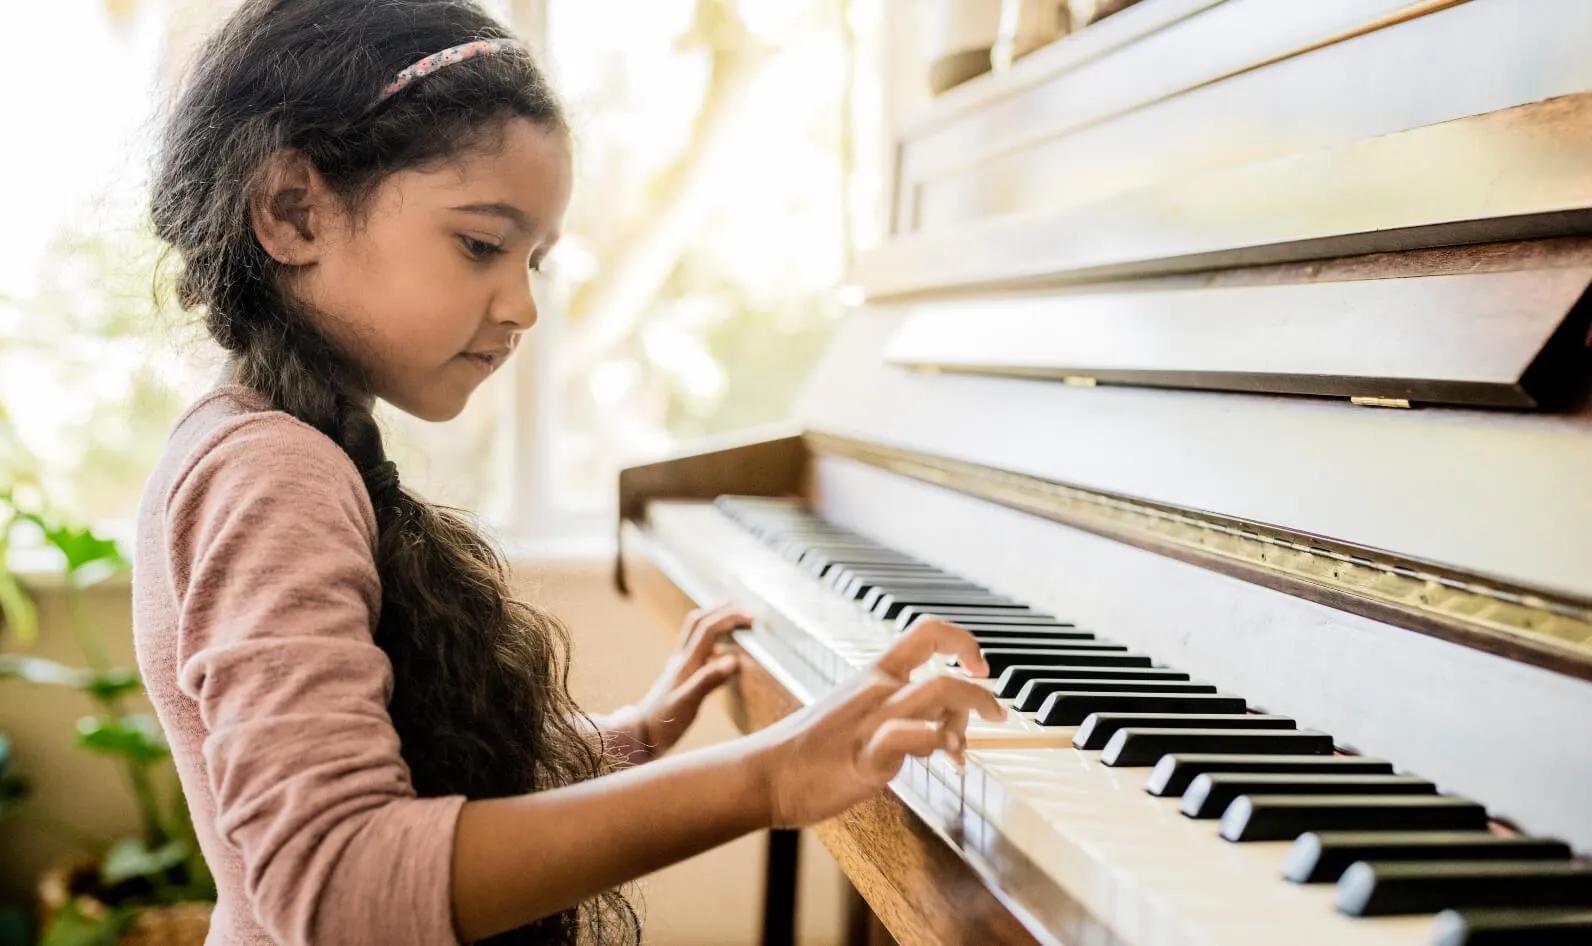 Music - Encourage children